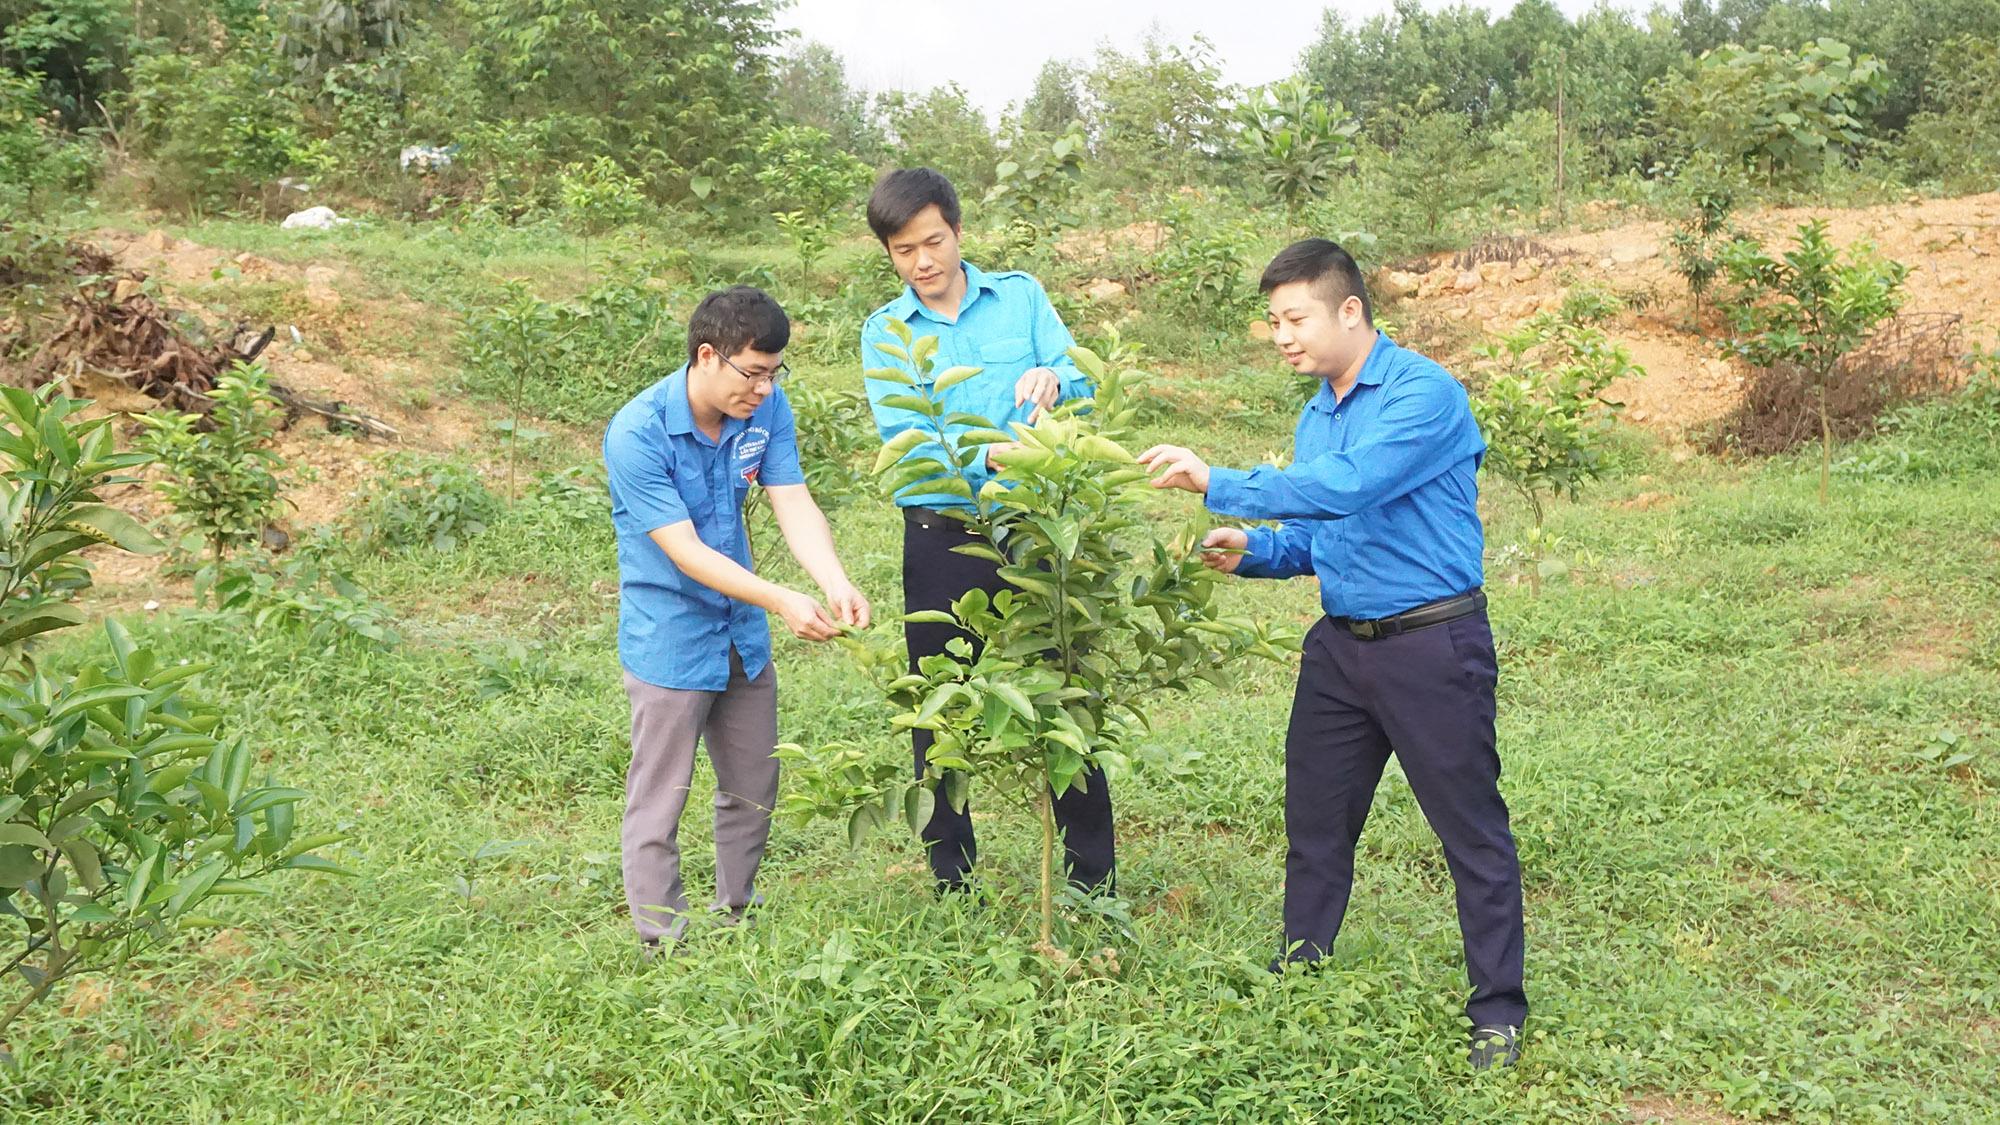 Mô hình trồng cây ăn quả và dược liệu của anh Trần Văn Linh, thôn Khe Nháng, xã Thanh Lâm (đứng giữa).